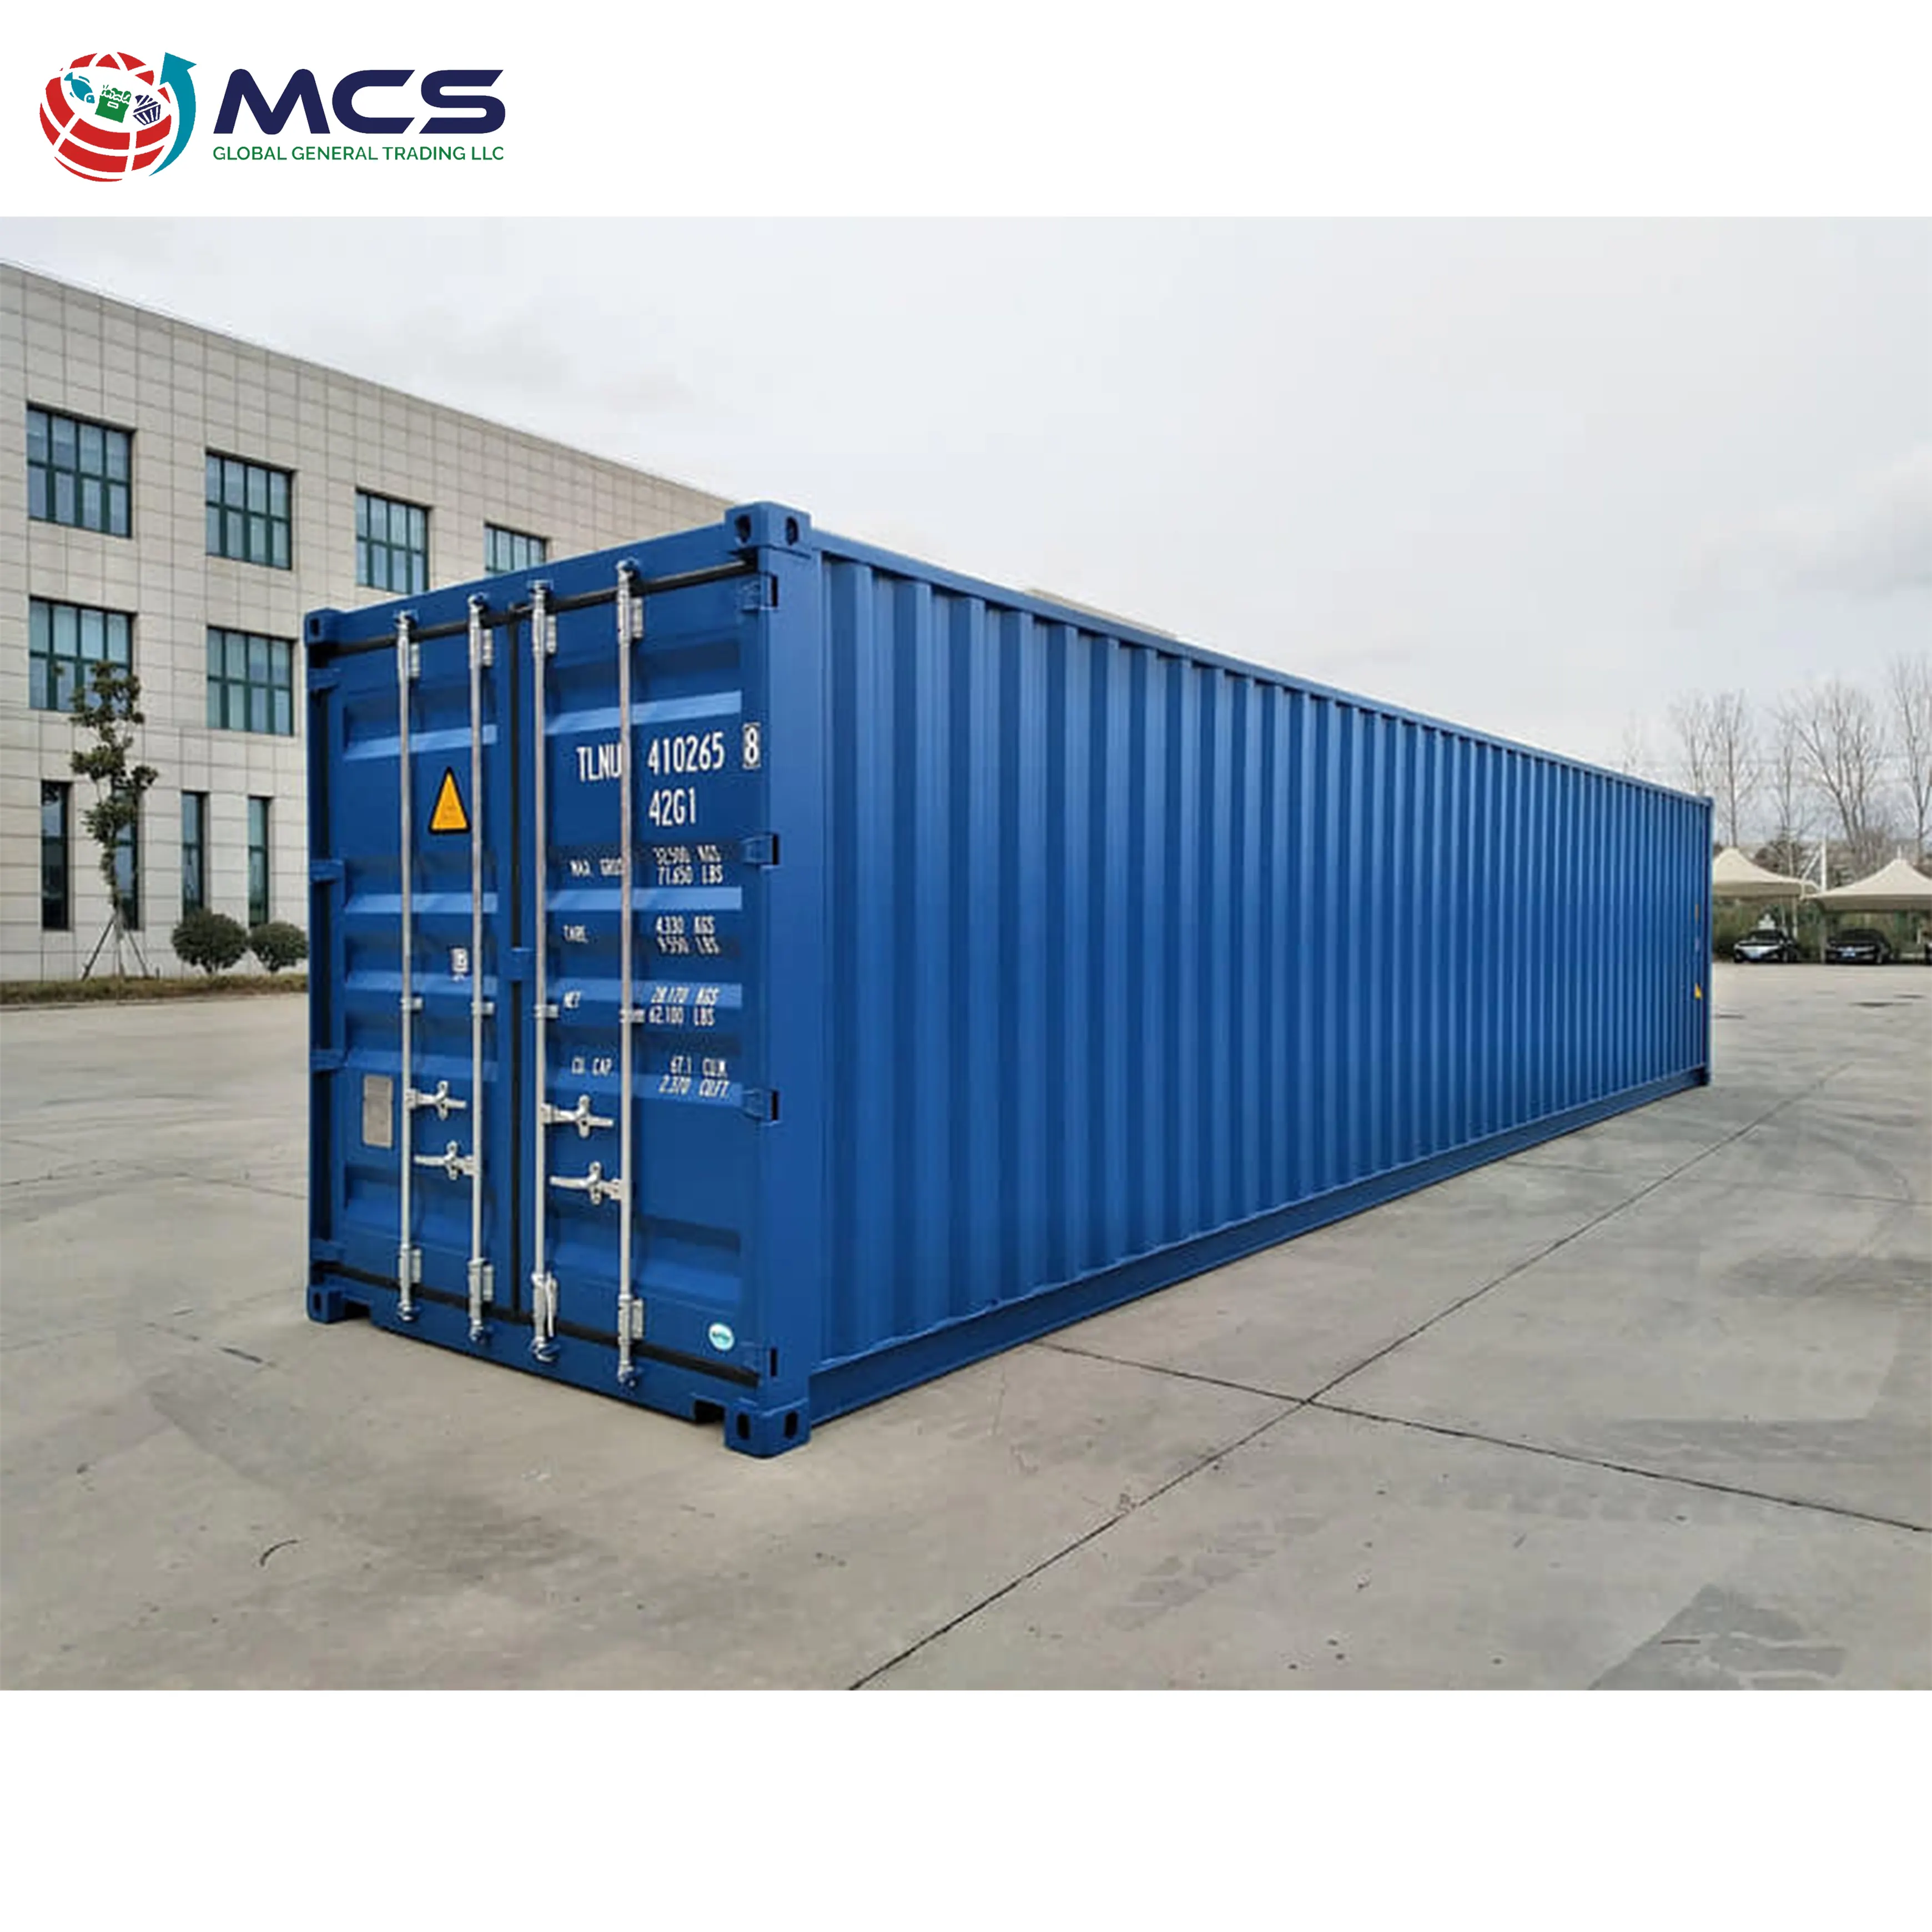 Großhandel zu niedrigen Preisen verkaufen wir 40ft Container, die verwendet werden können, um Container Lagerung Versand behälter zu bauen